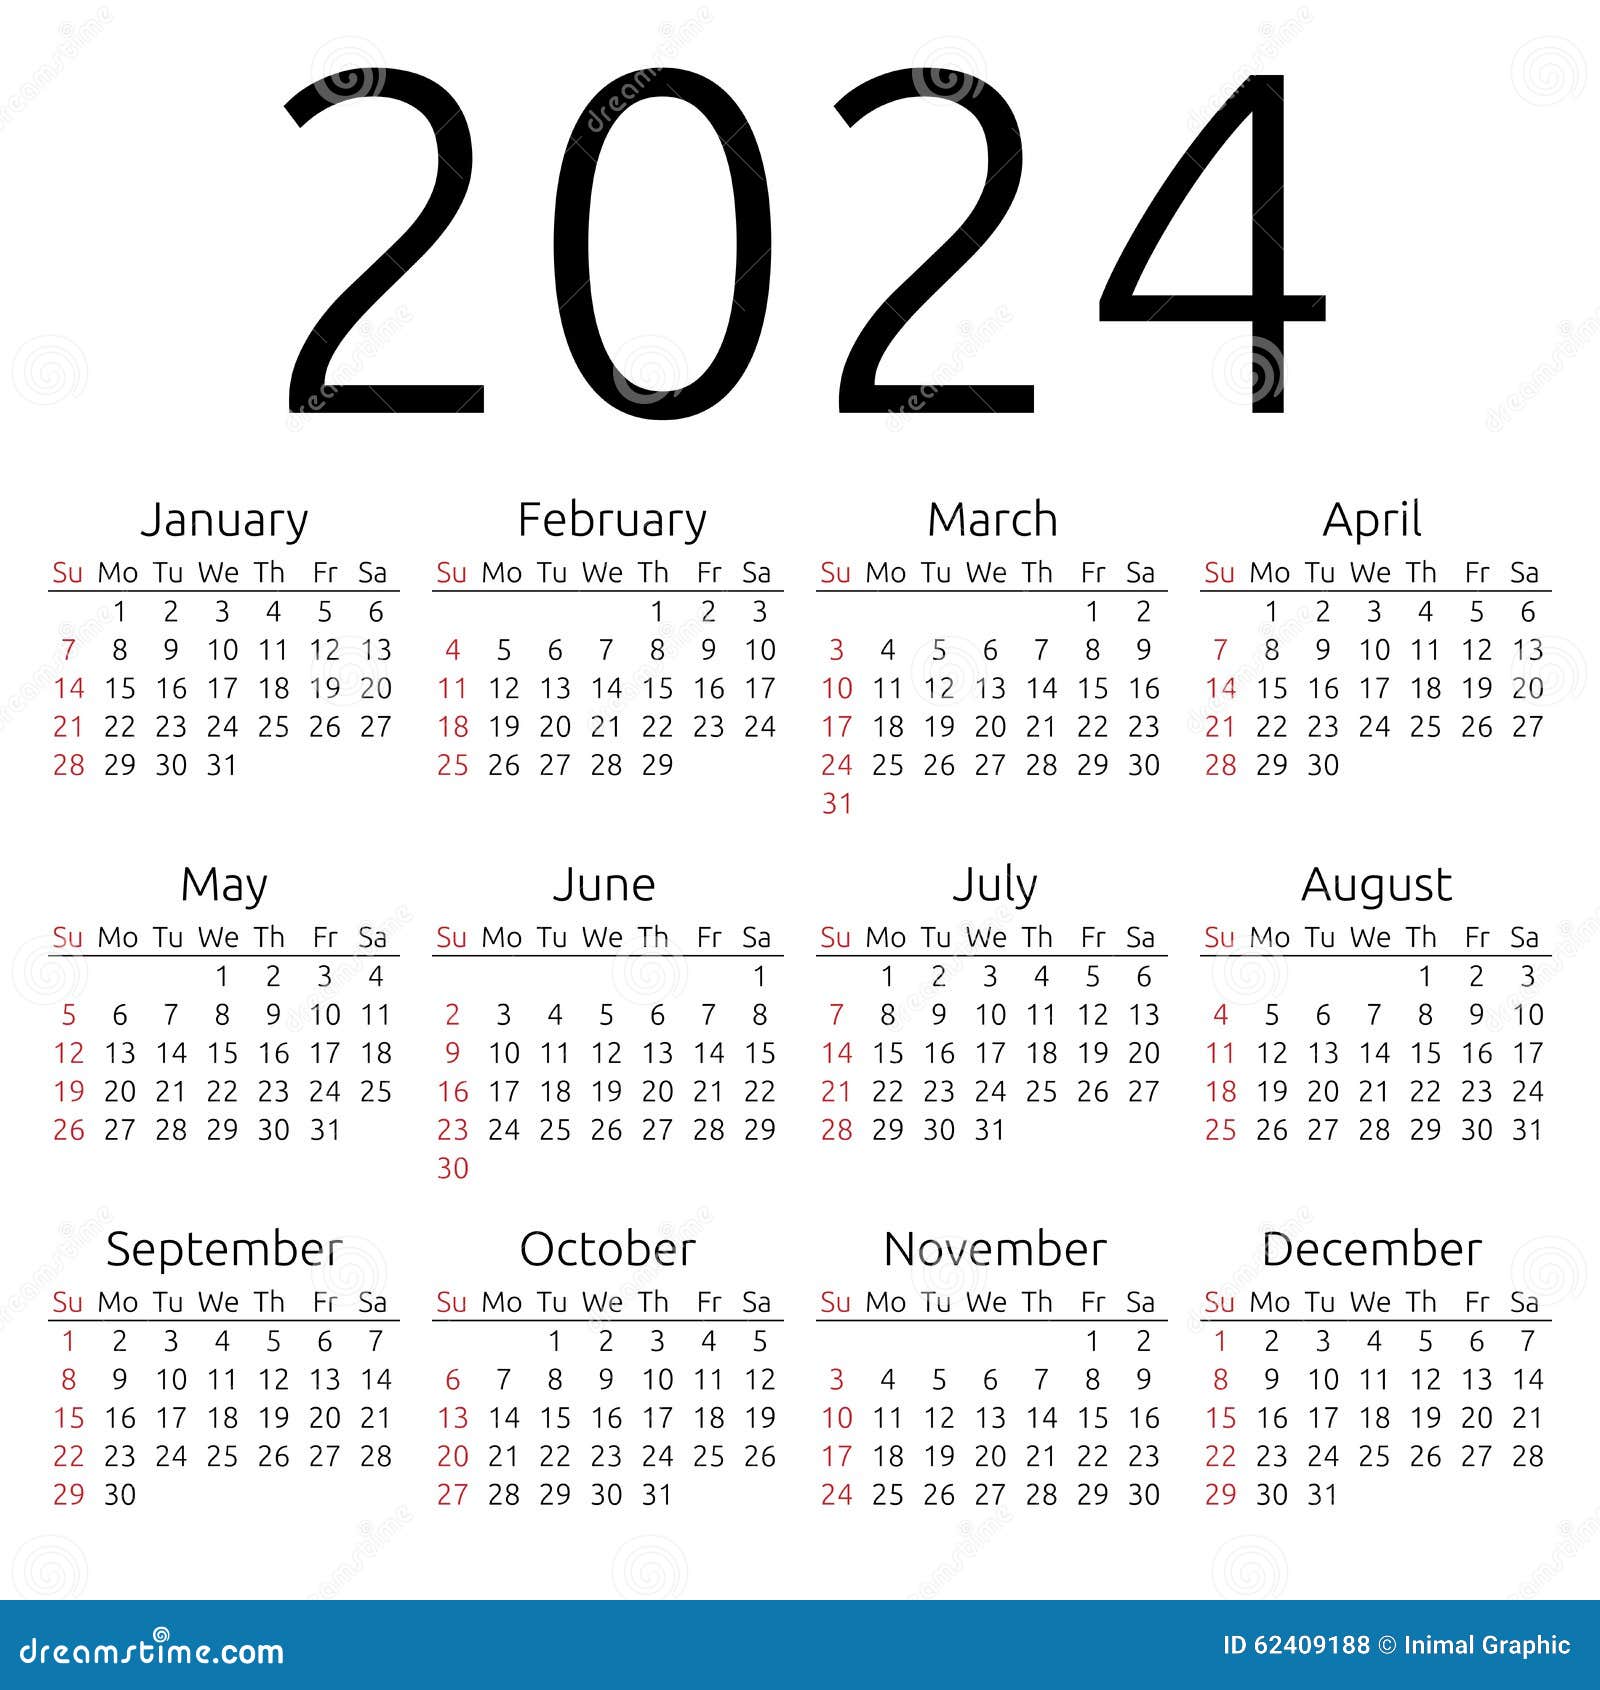 Calendario 2024: Un Paese che cresce